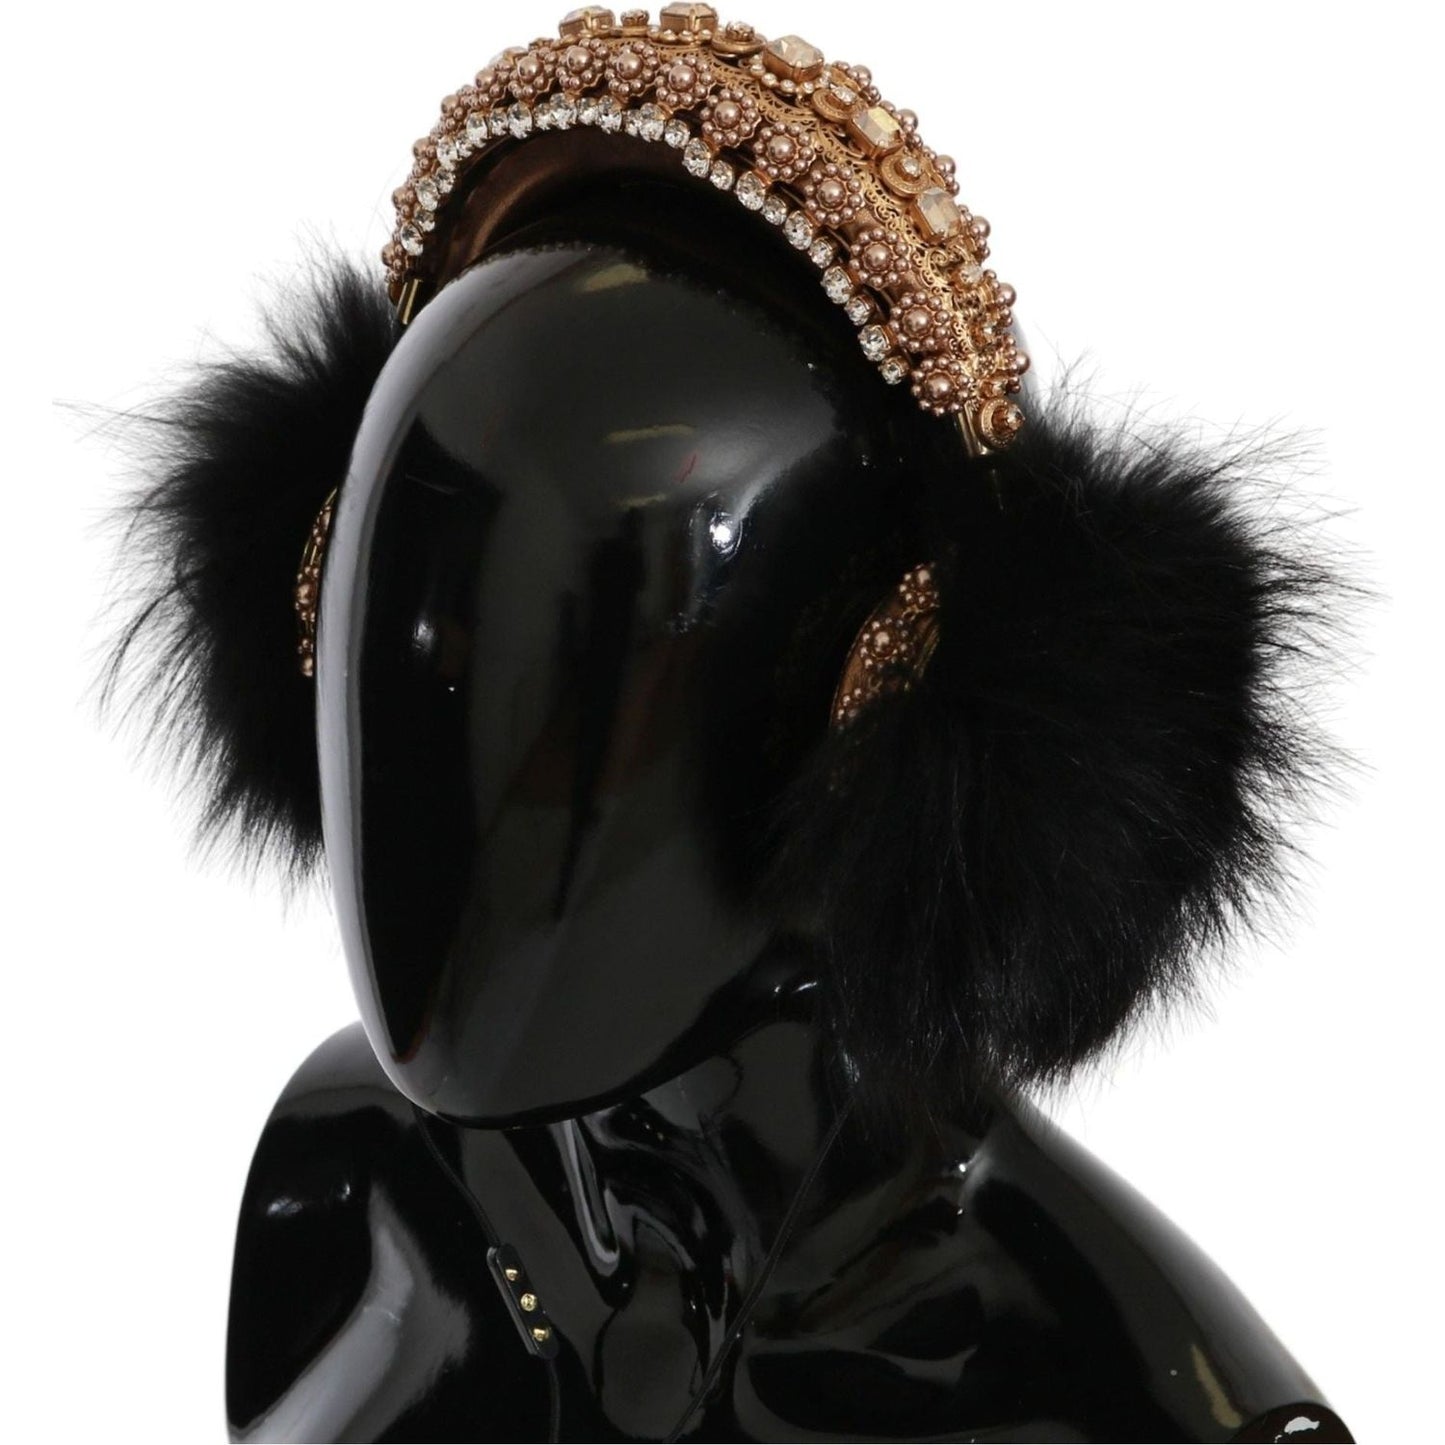 Dolce & Gabbana Gold Black Crystal Embellished Headphones gold-black-crystal-fur-headset-audio-headphones